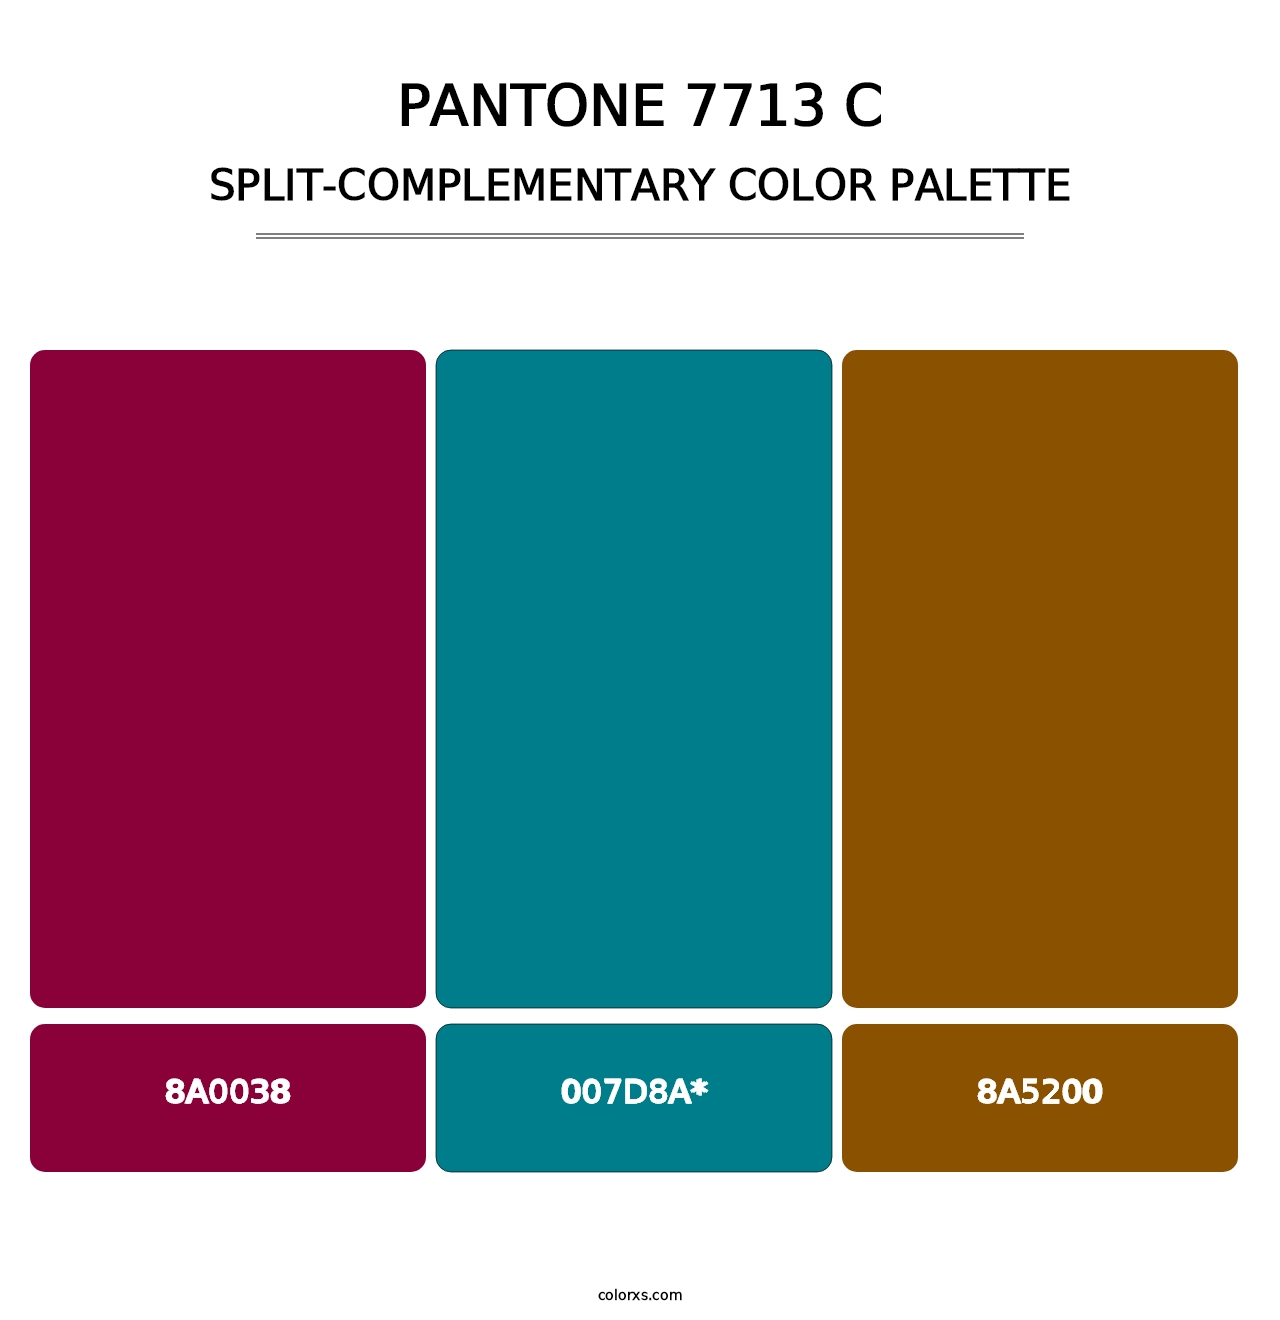 PANTONE 7713 C - Split-Complementary Color Palette